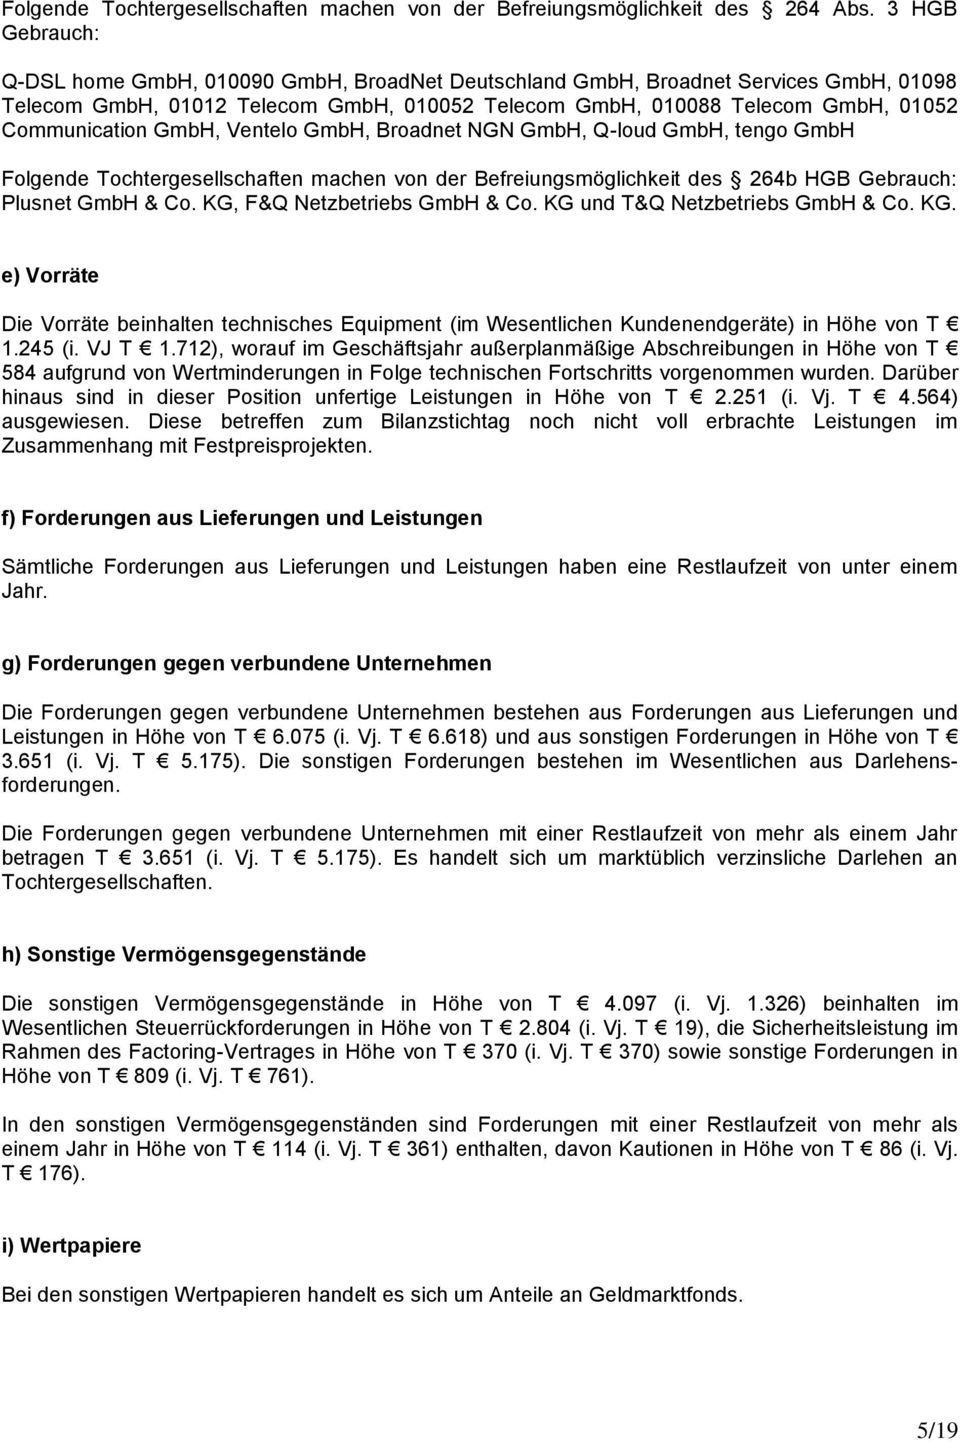 GmbH, Ventelo GmbH, Broadnet NGN GmbH, Q-loud GmbH, tengo GmbH Folgende Tochtergesellschaften machen von der Befreiungsmöglichkeit des 264b HGB Gebrauch: Plusnet GmbH & Co.